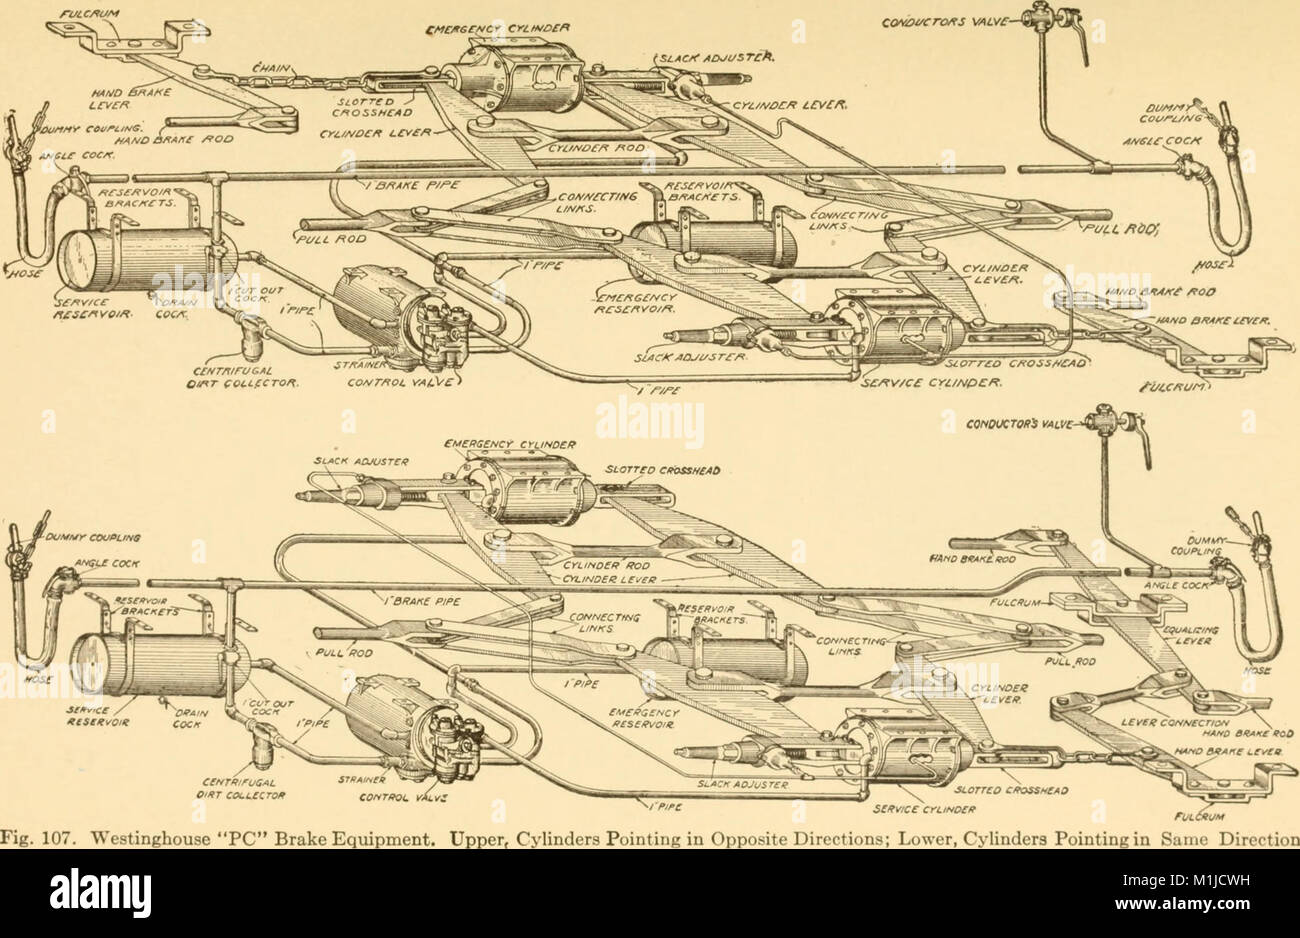 Druckluftbremsanlage, eine Abhandlung über die Westinghouse Air Brake wie vorgesehen für den Personen- und Güterverkehr und für Elektroautos (1918) (14783810283) Stockfoto